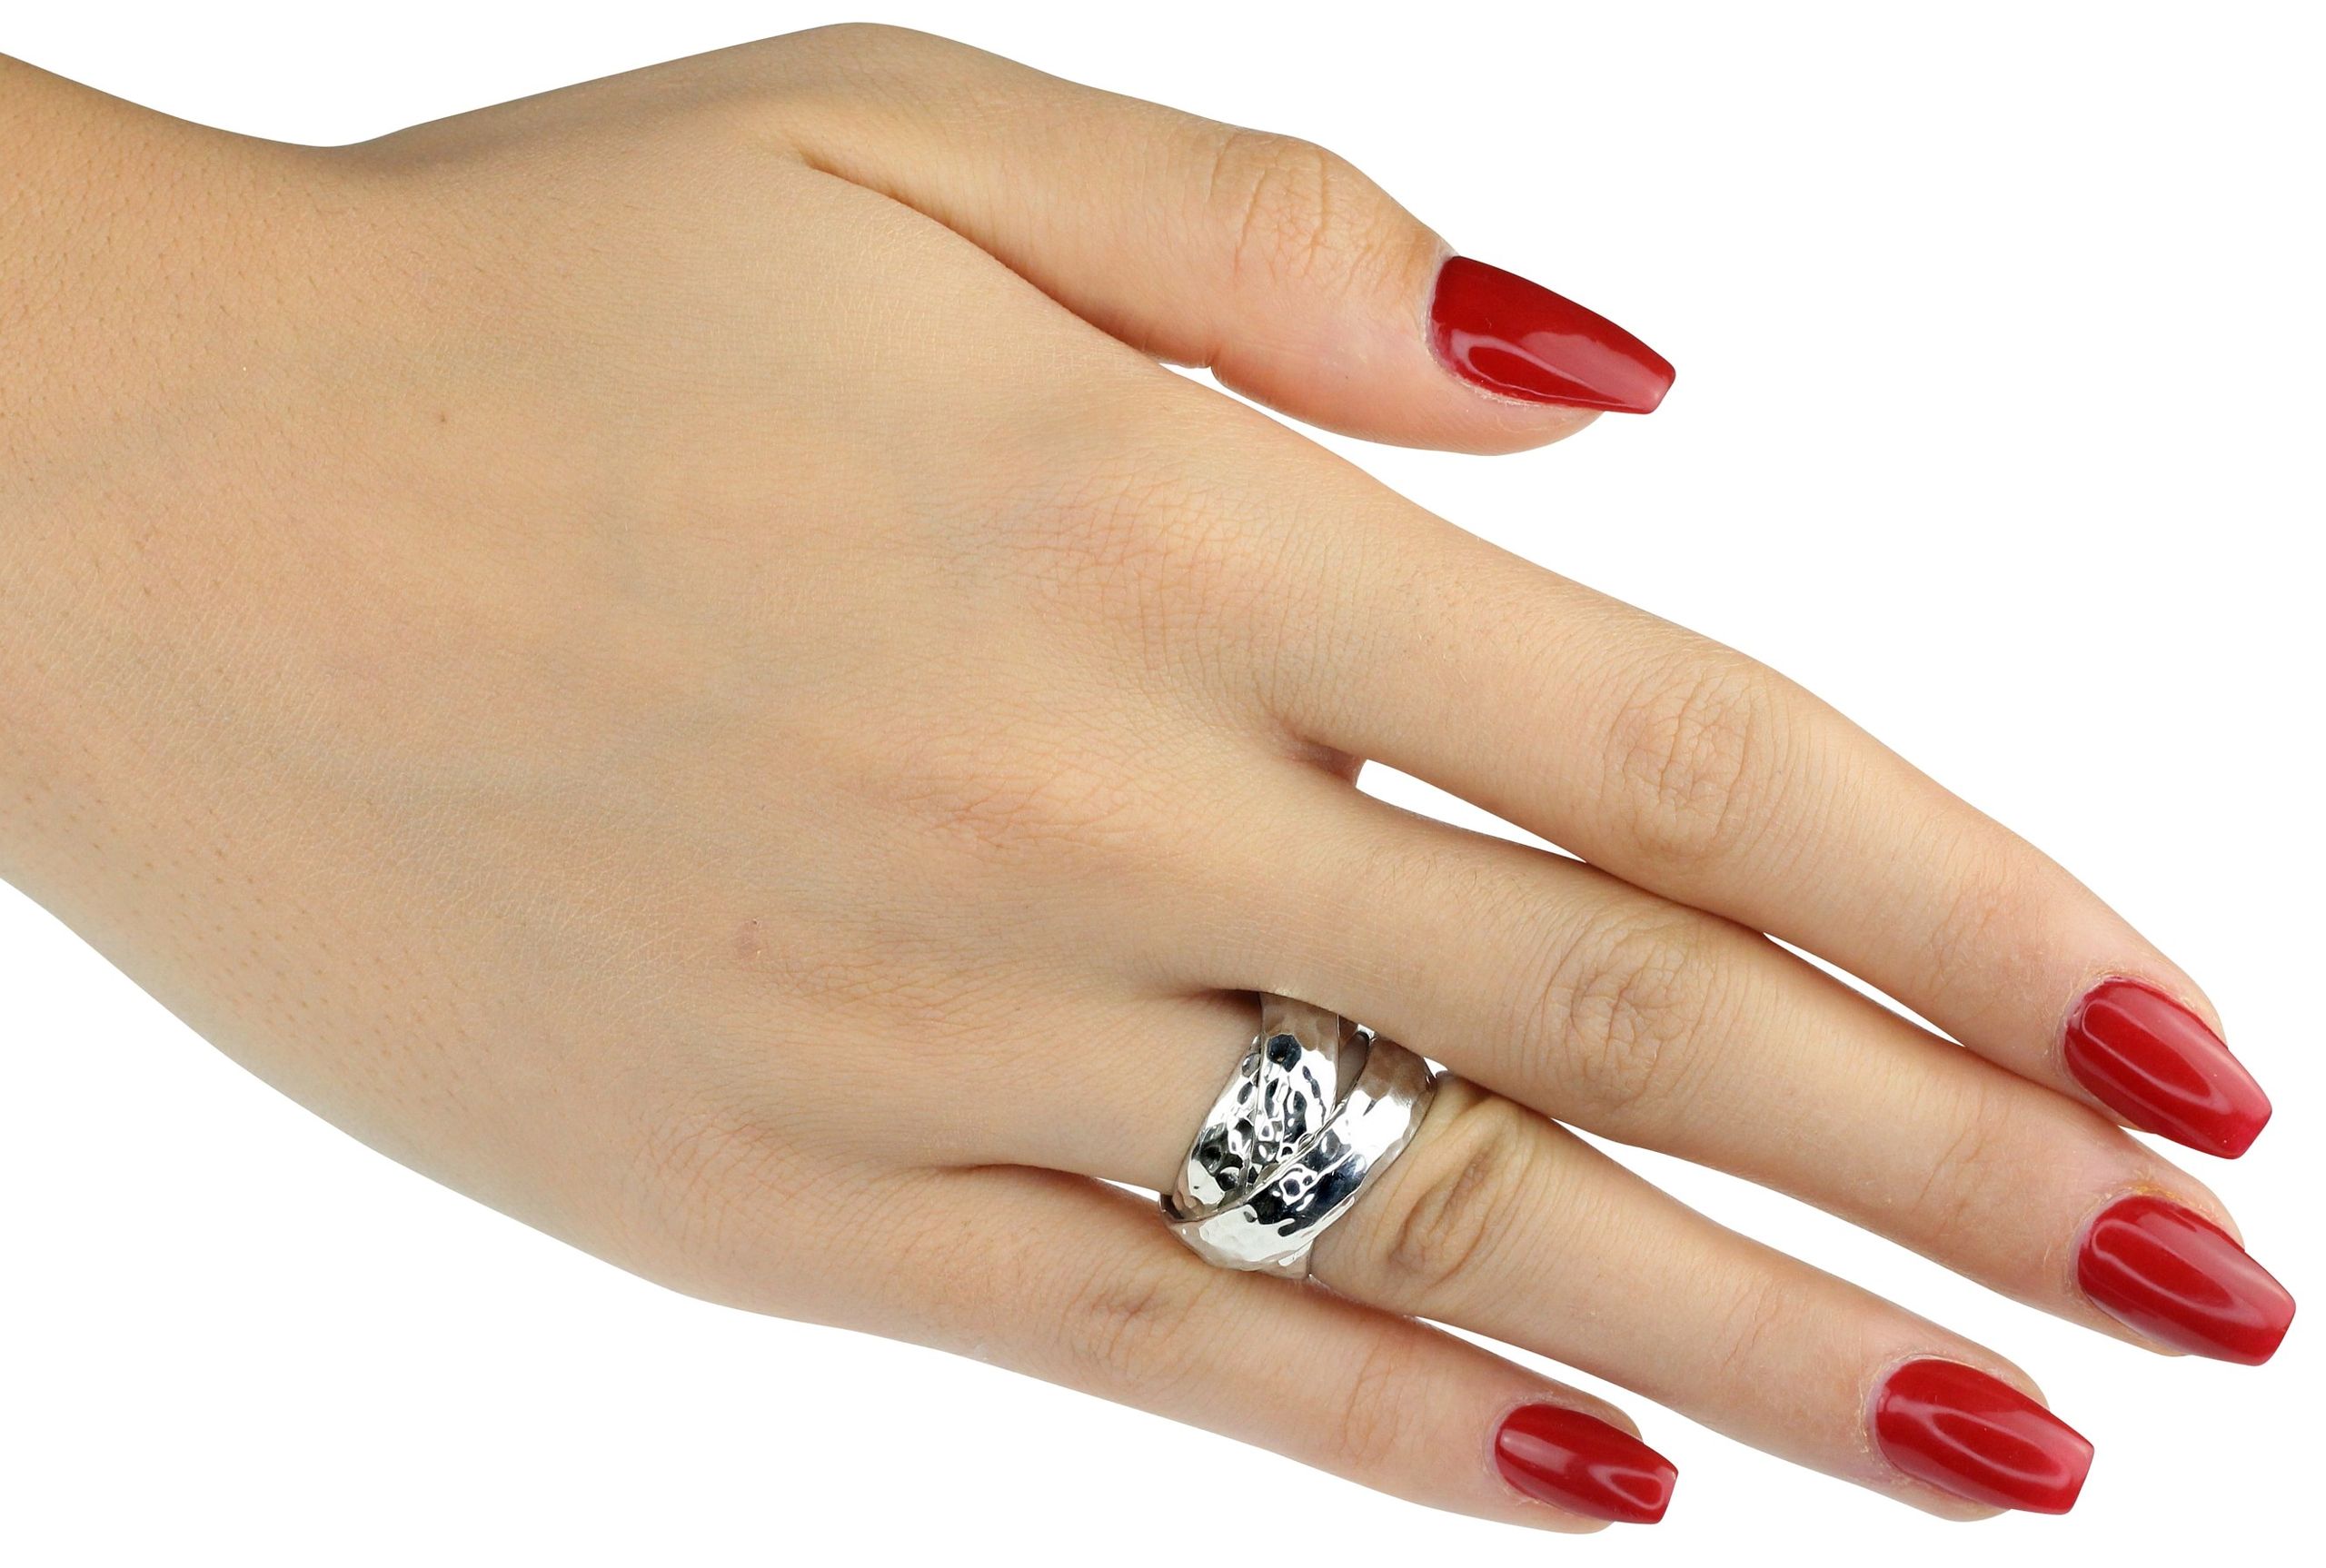 Eleganter Damenring aus Silber in den Größen 64 bis 70 mit drei fest verbundenen Ringschienen. Der Ring ist geschmiedet und hat eine leicht gehämmerte Oberfläche.